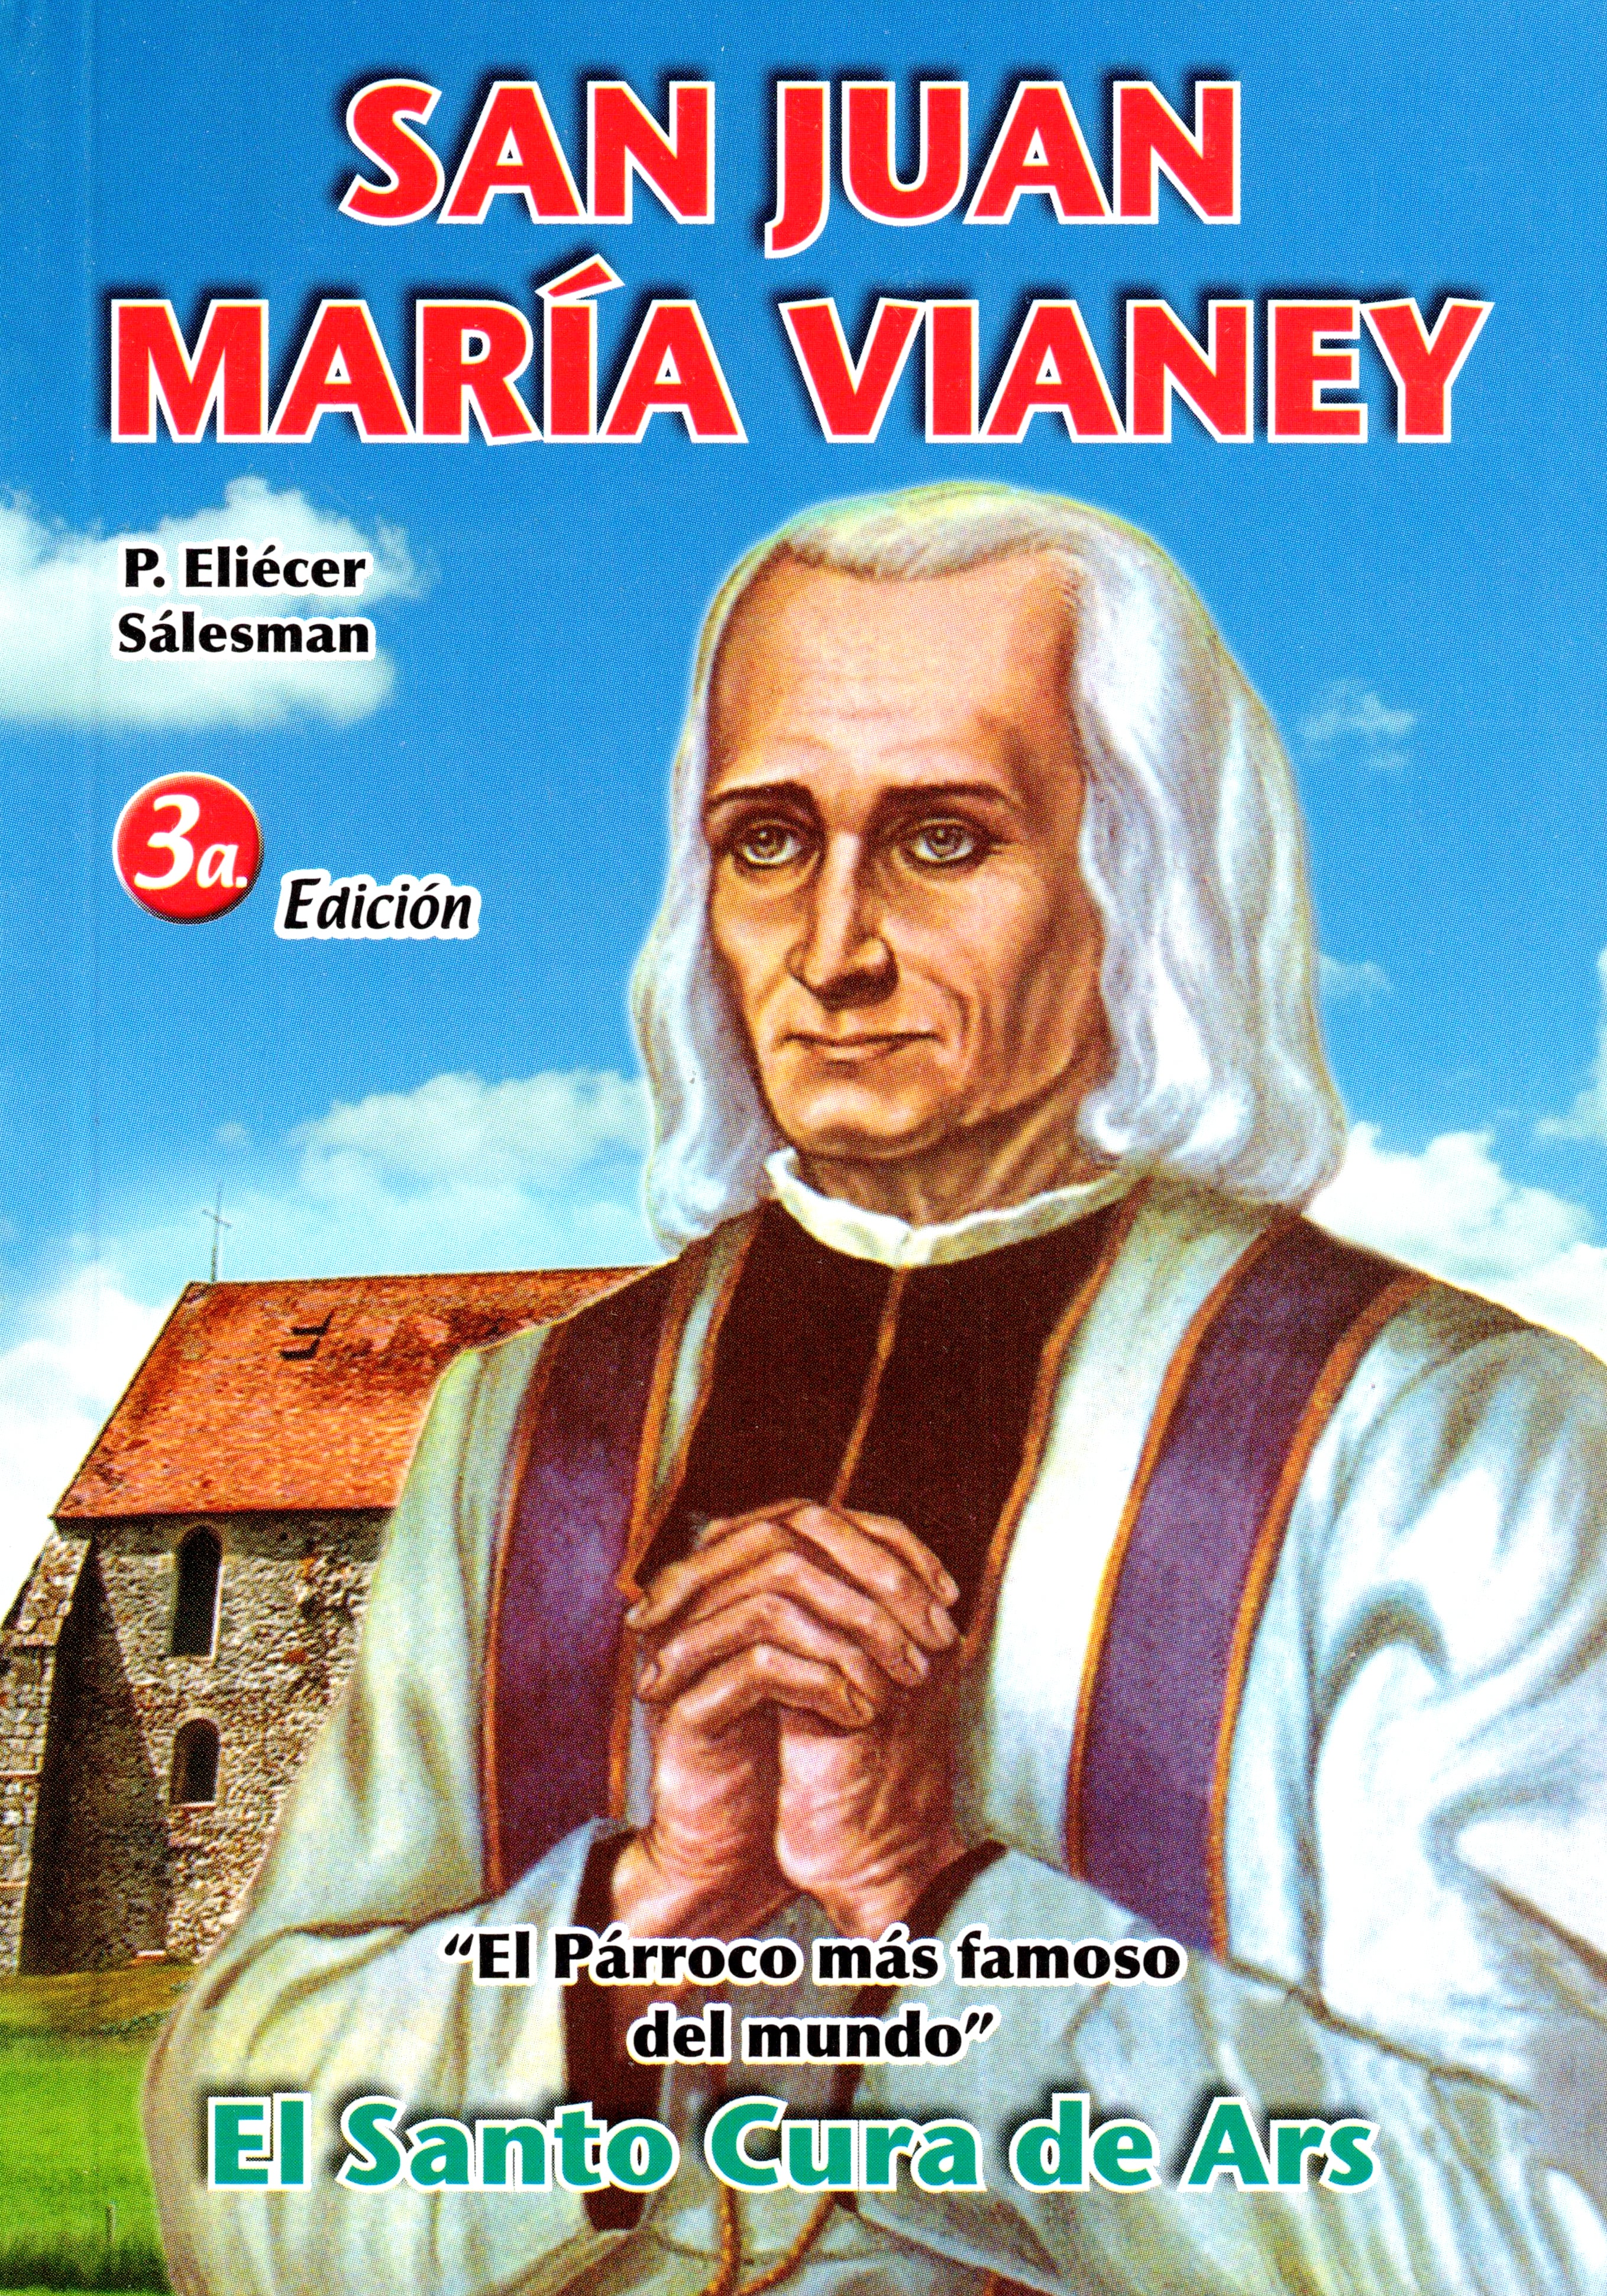 San Juan María Vianey, El Santo Cura de Ars